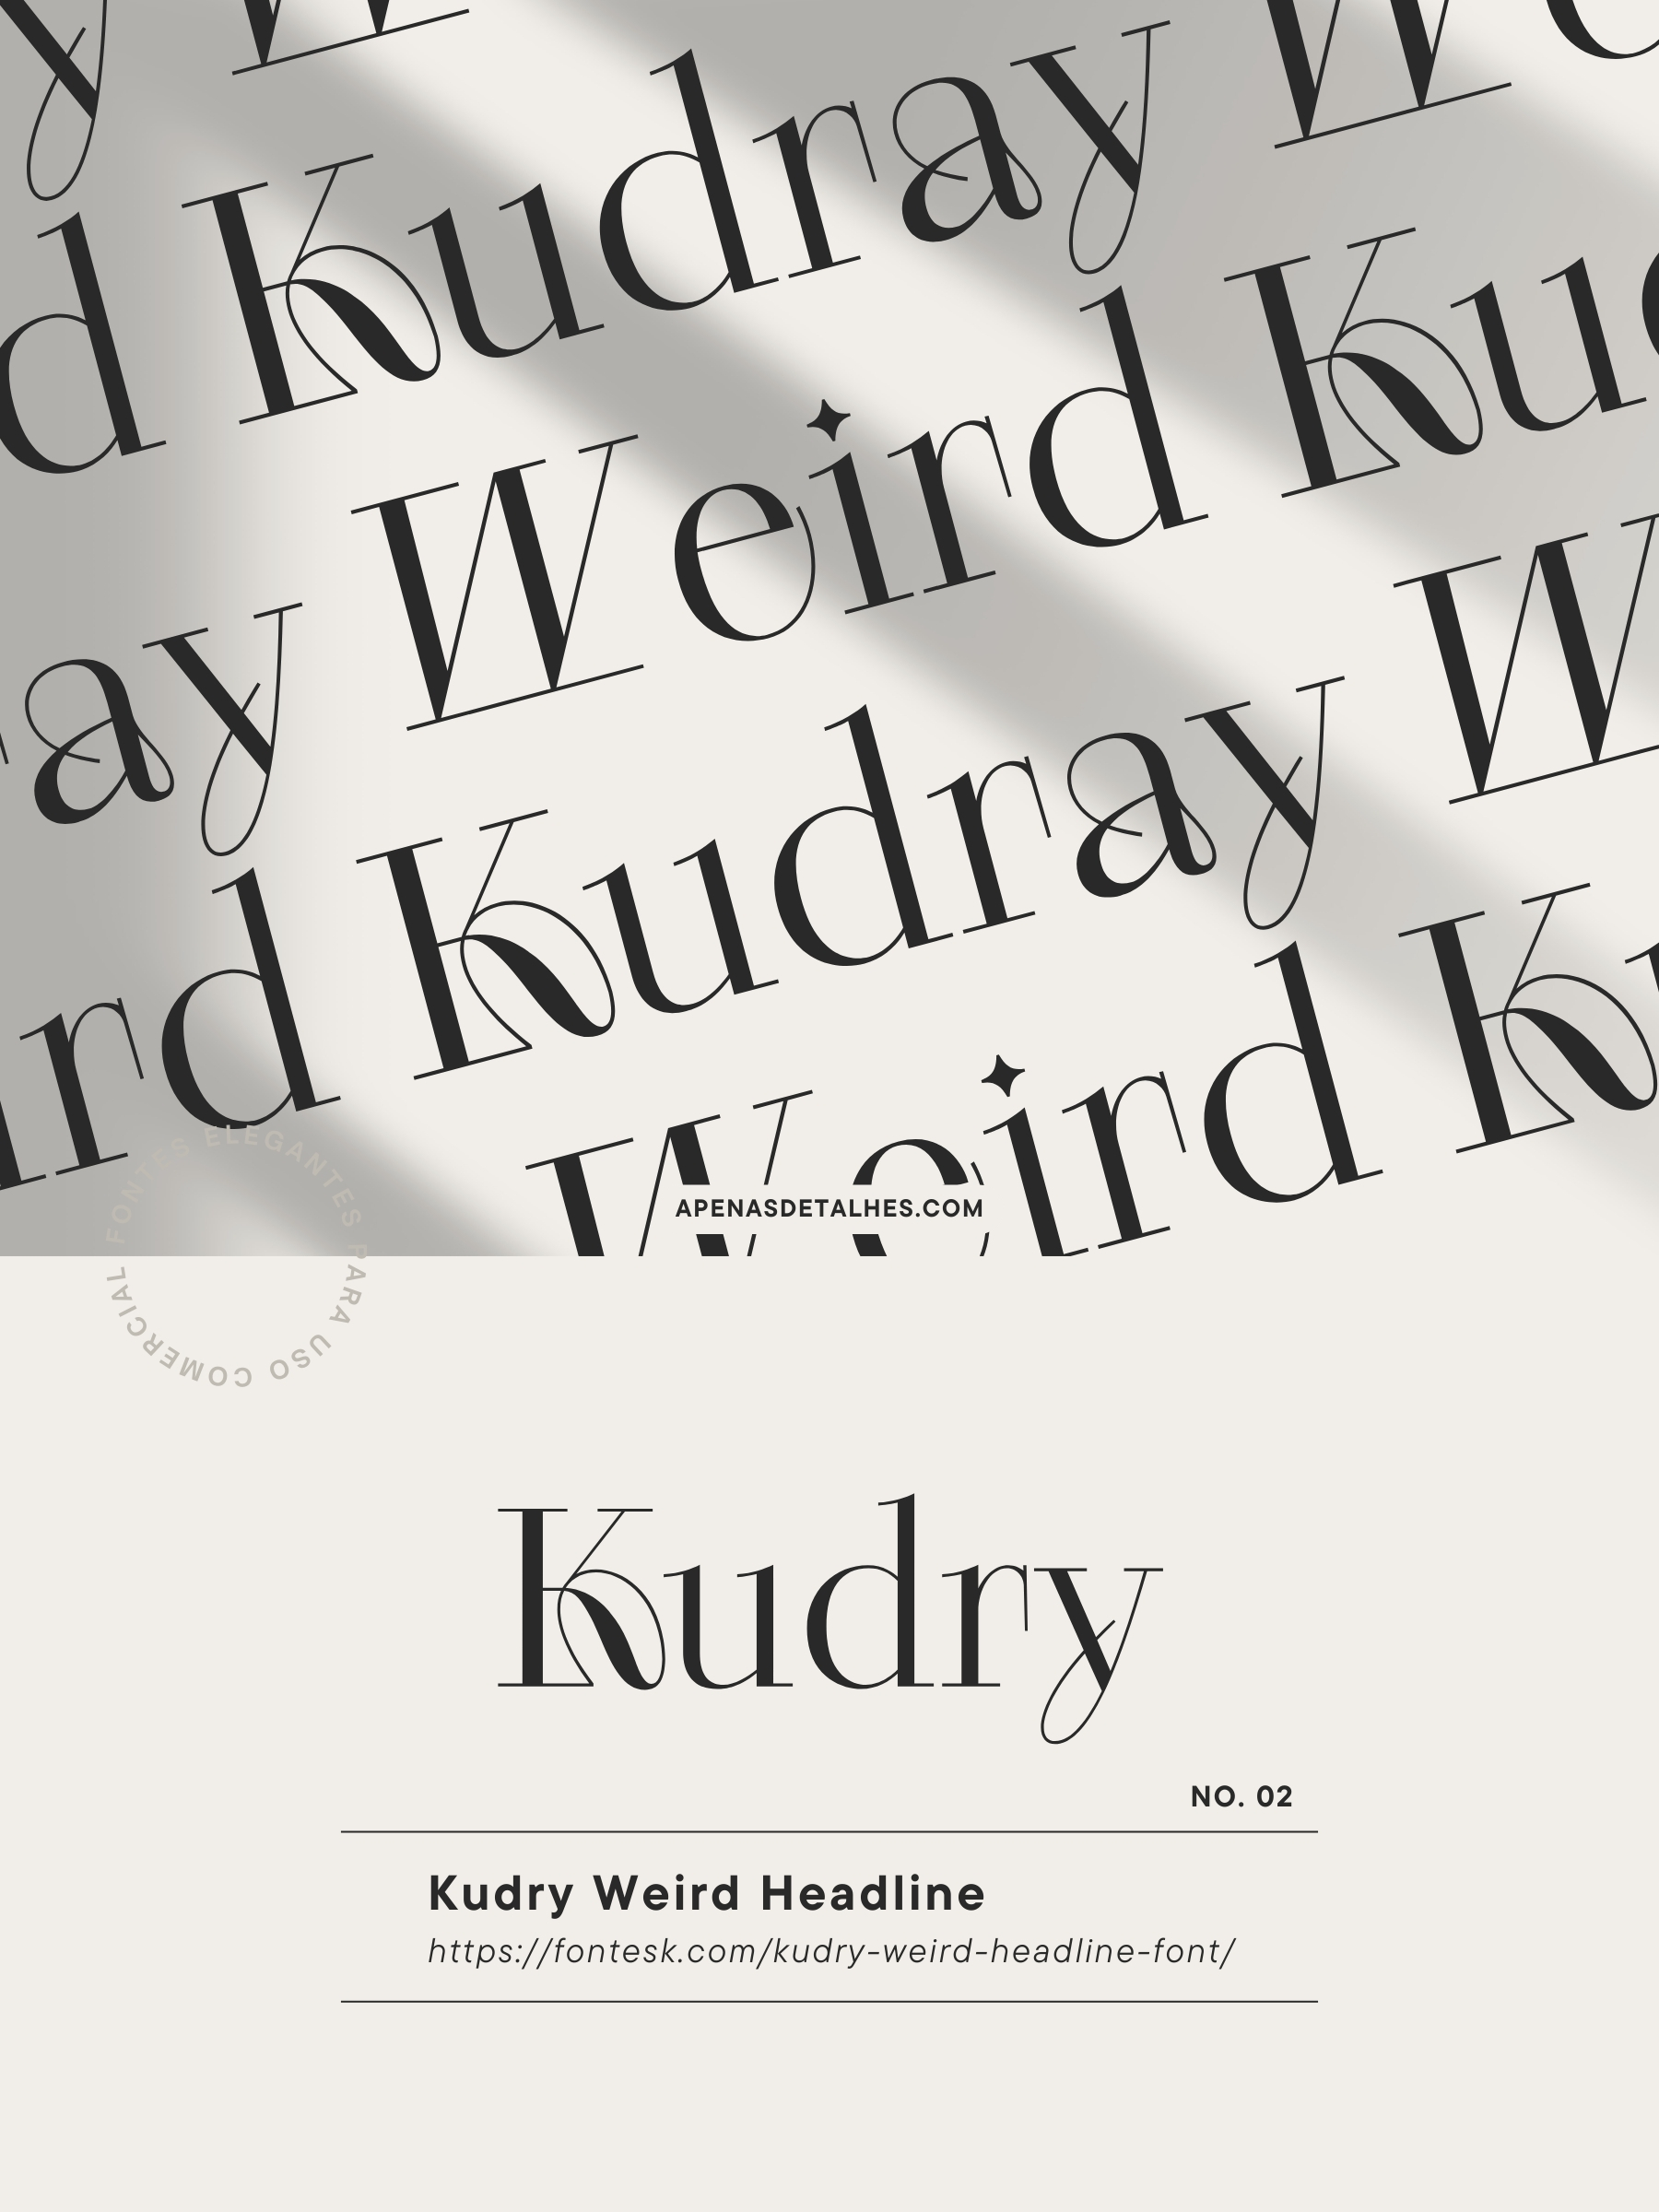 10 fontes elegantes e gratuitas para uso comercial - Kudry